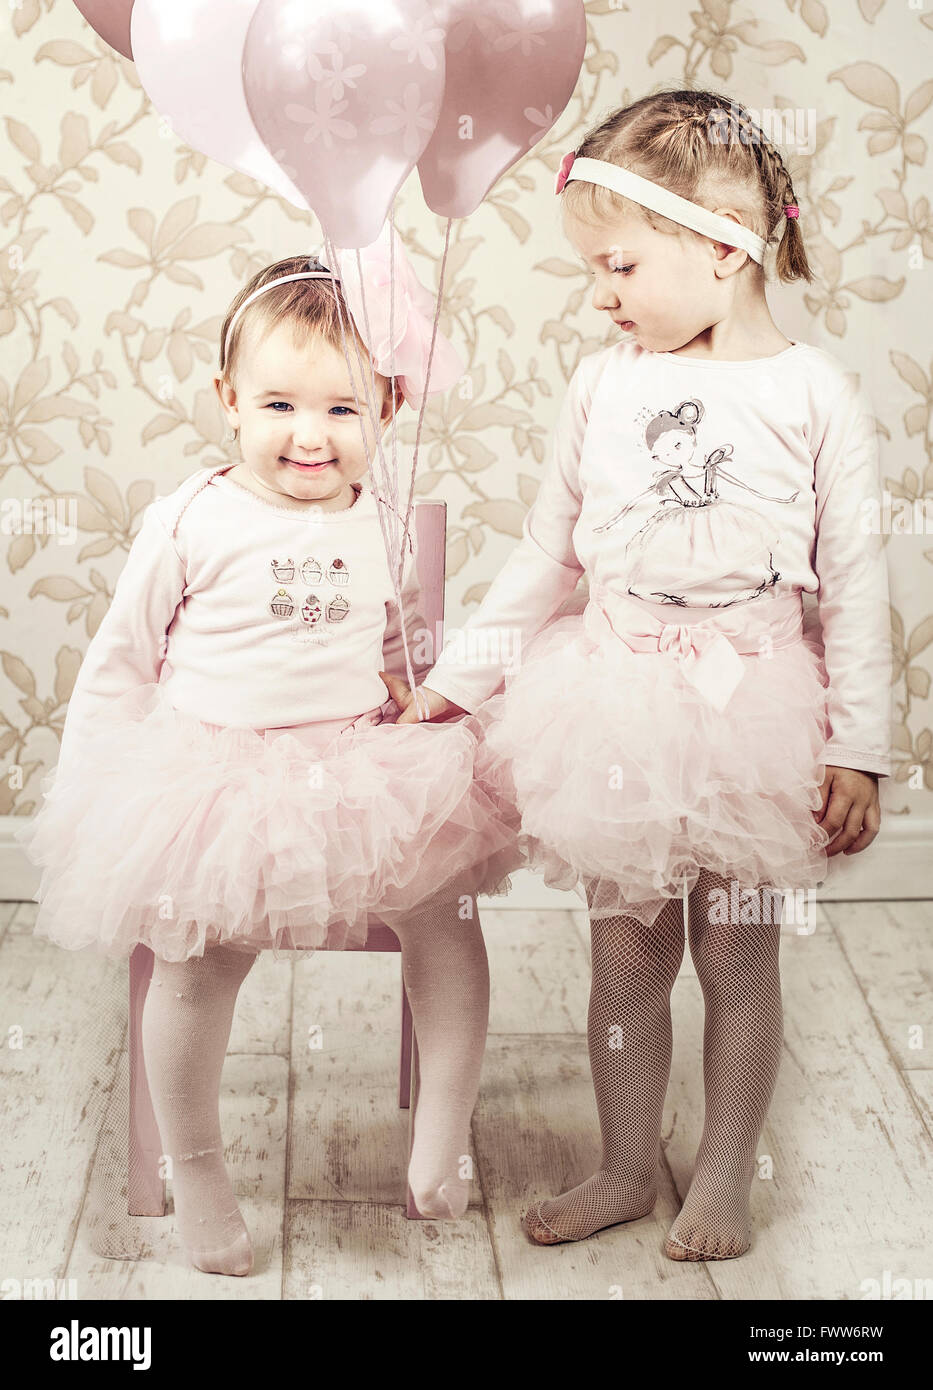 zwei kleine Mädchen Schwestern, in einem Raum mit Luftballons, Stockfoto